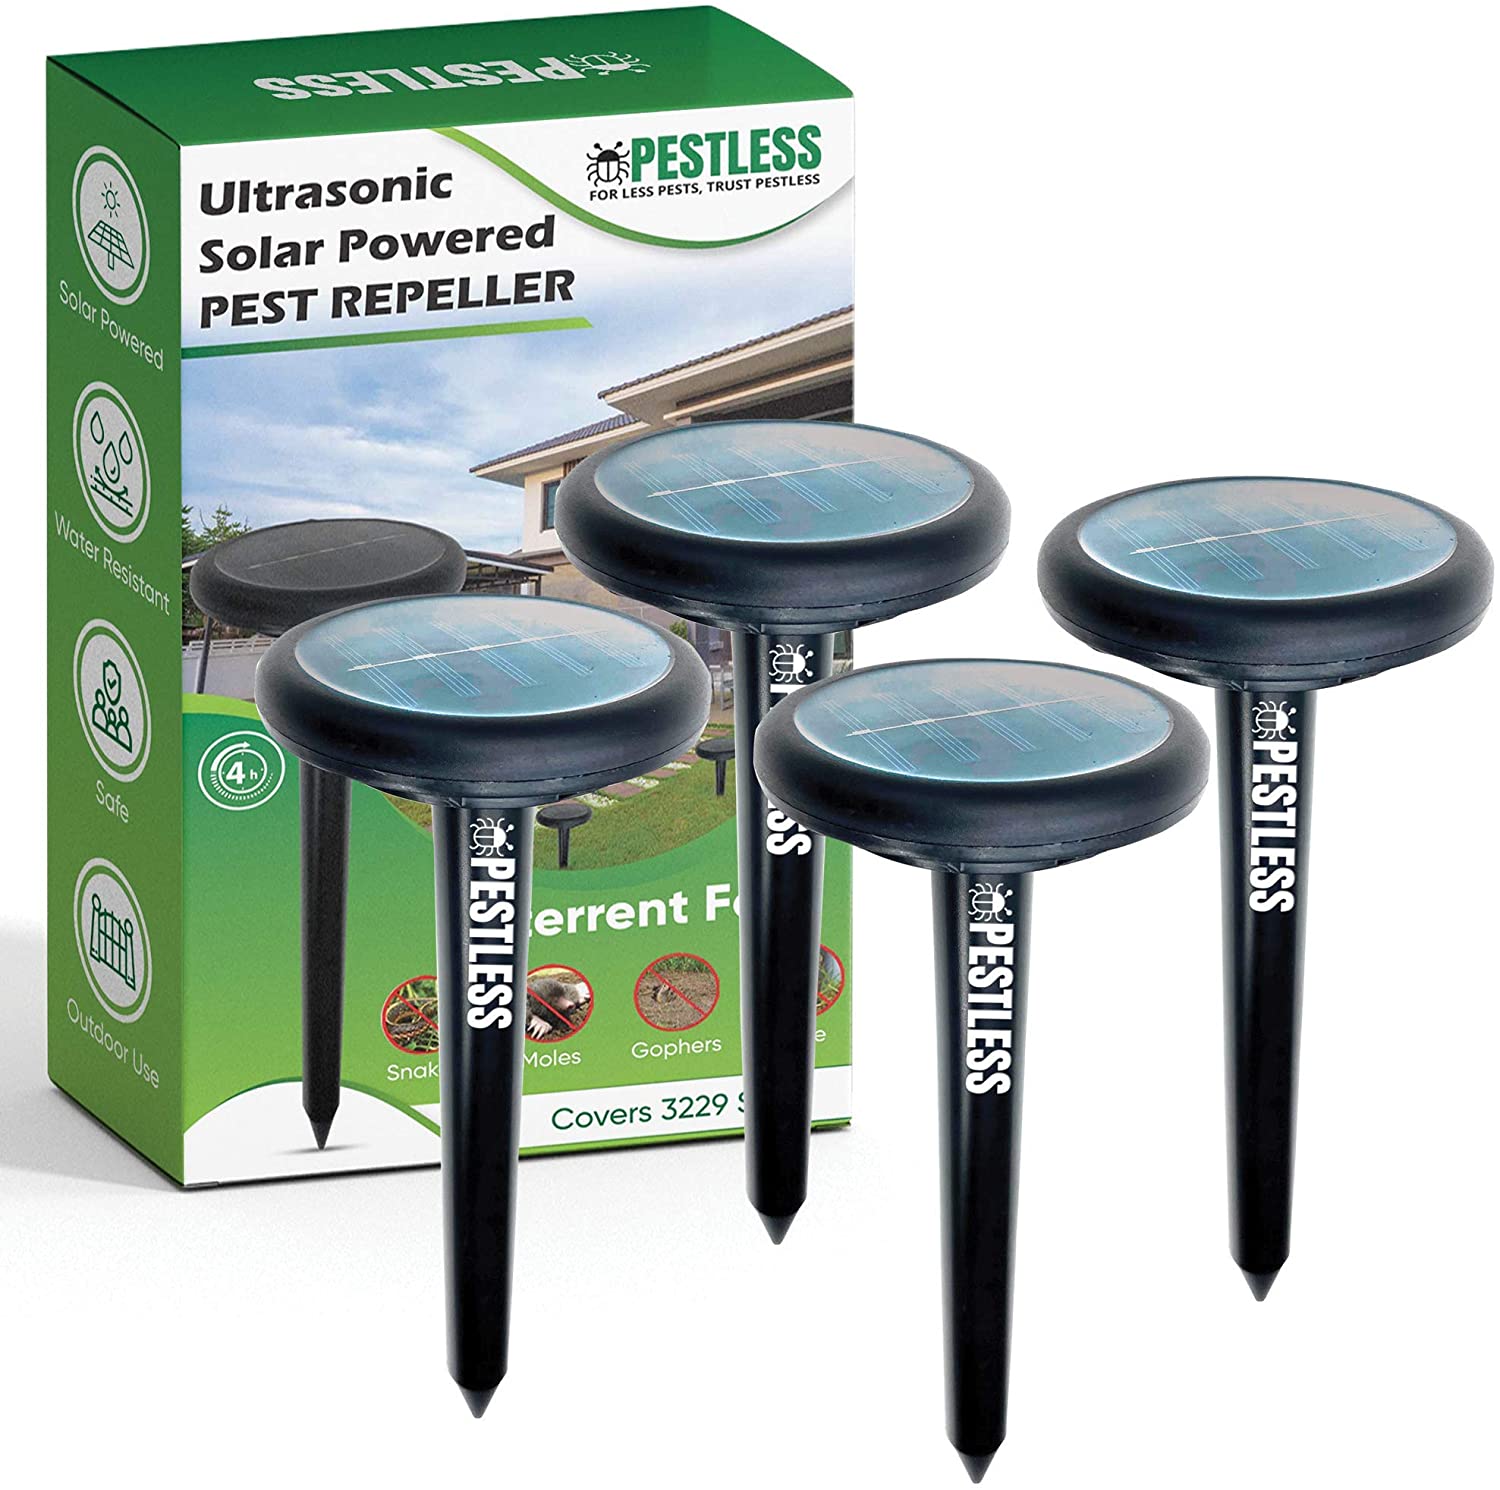 Pestless Upgraded Ultrasonic Pest Repeller